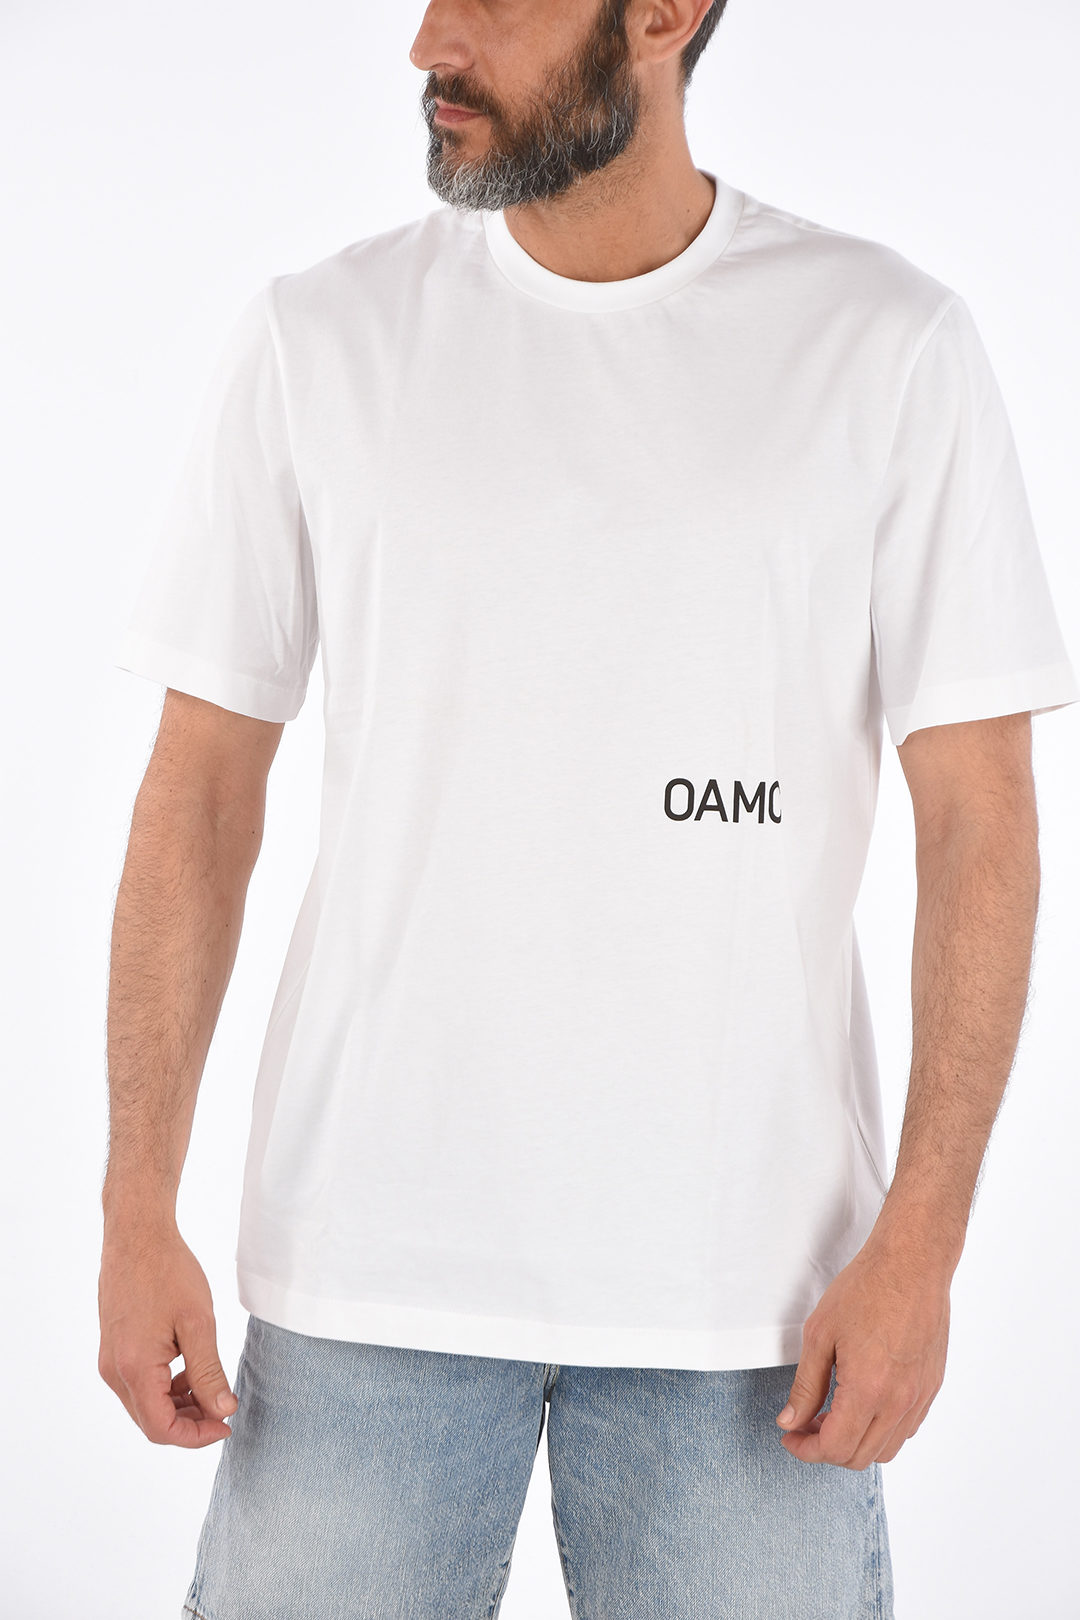 OAMC printed FRANCES t-shirt men - Glamood Outlet